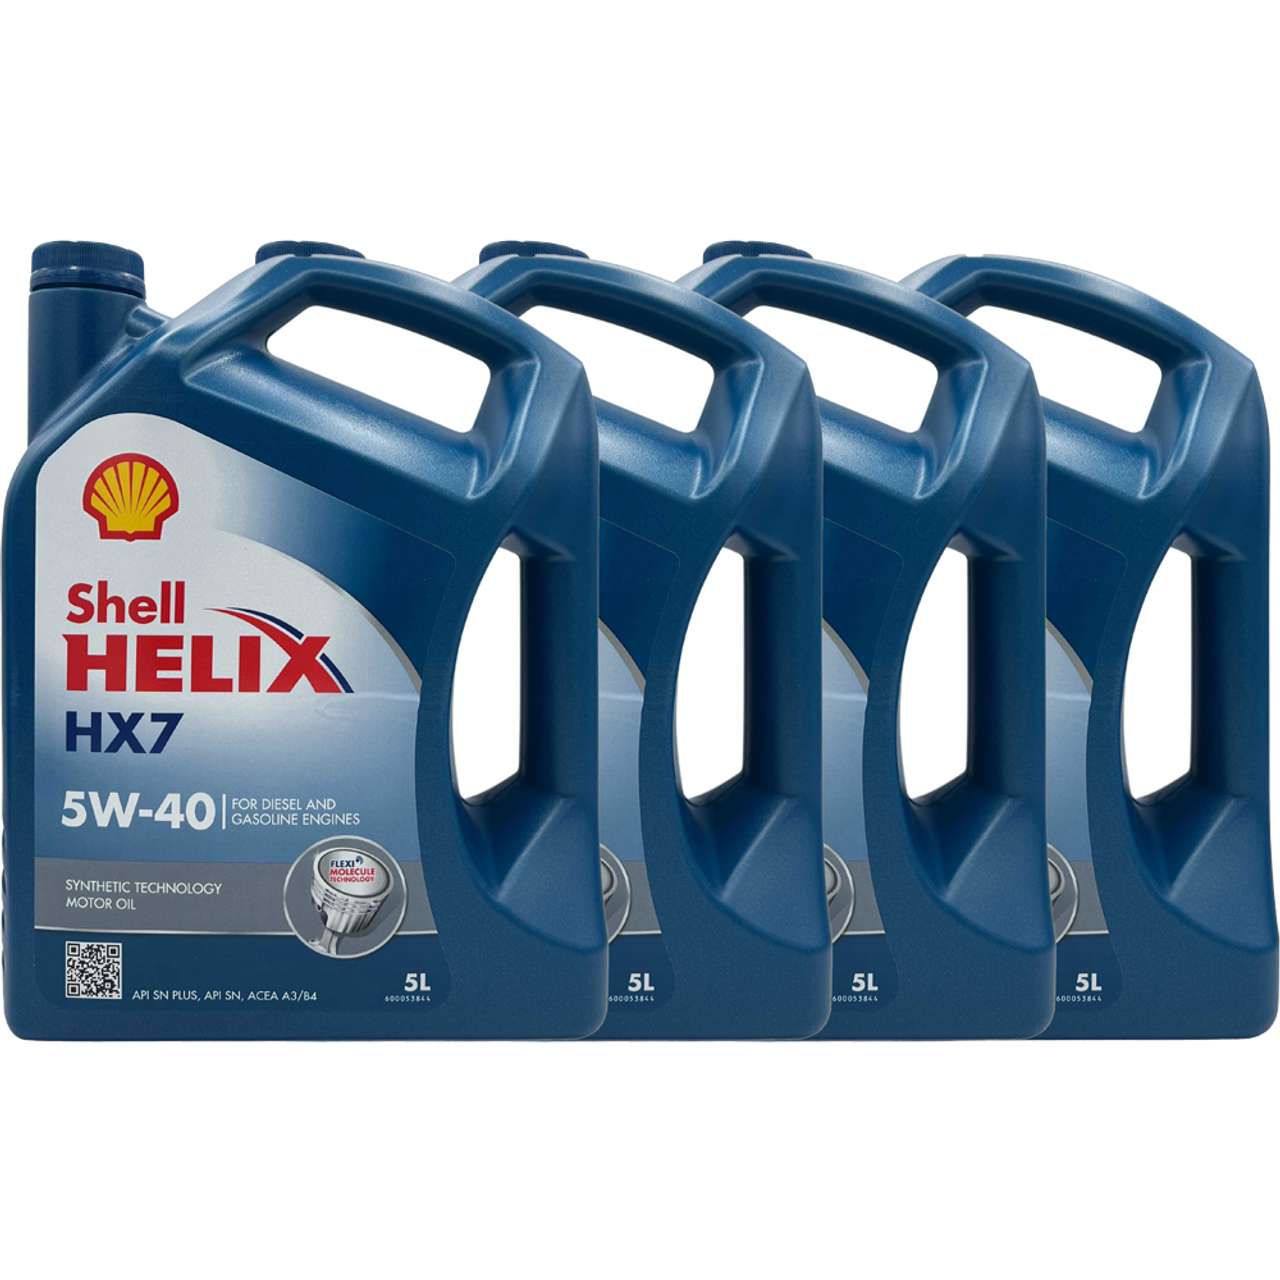 Shell Helix HX7 5W-40 4x5 Liter